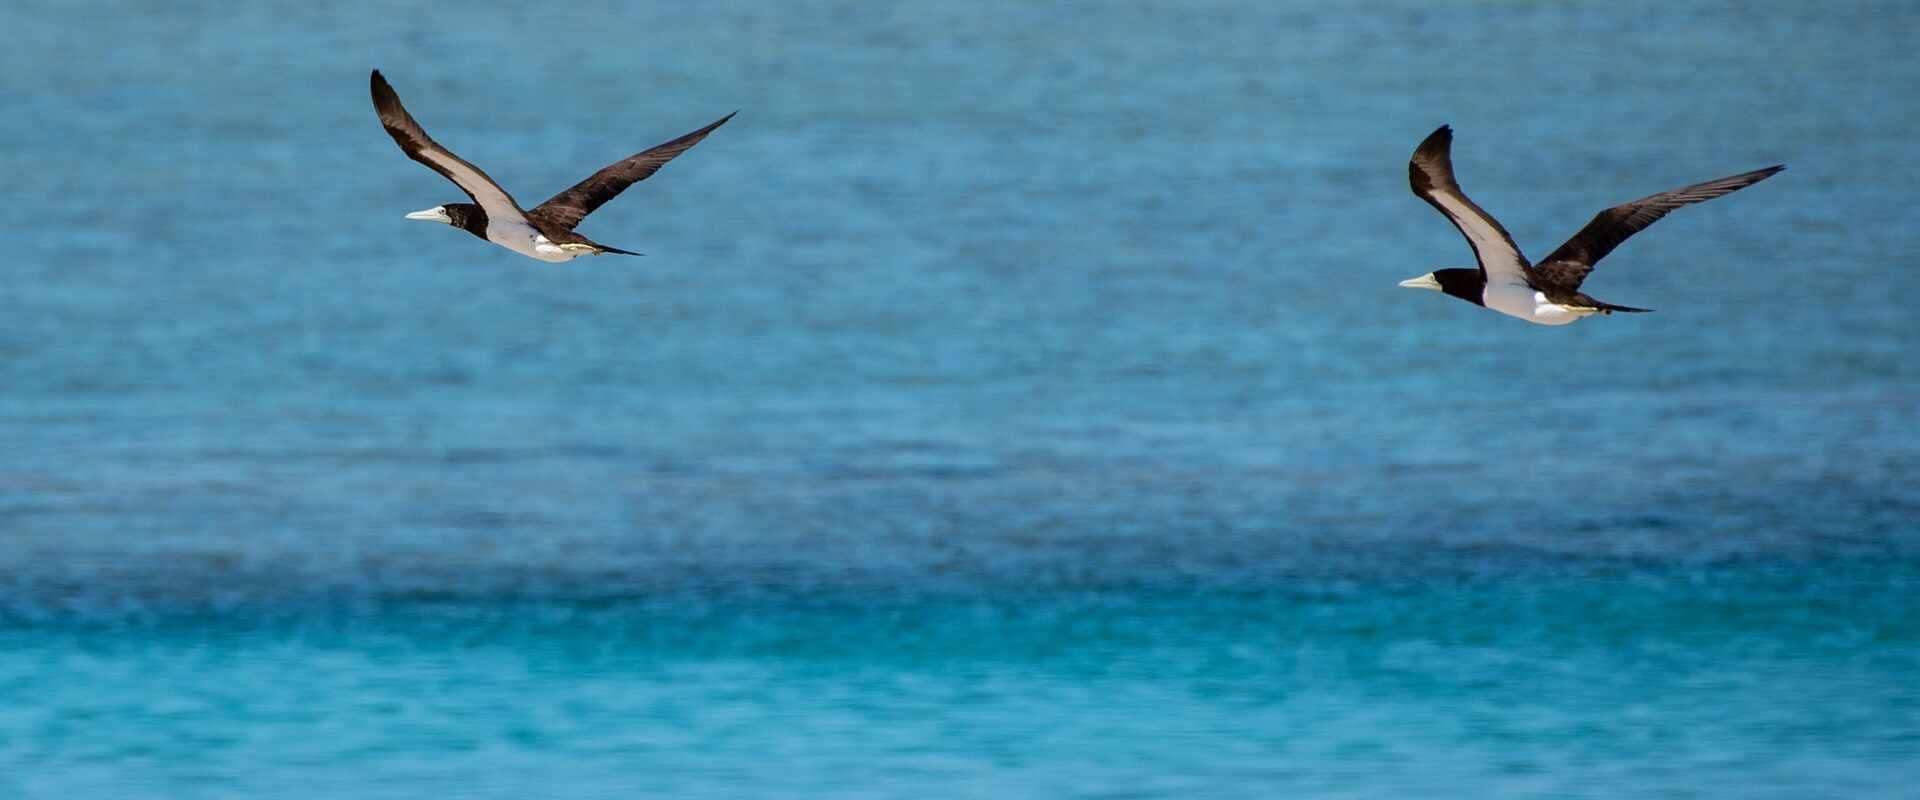 View of two birds flying over water of Adele Island, Kimberley